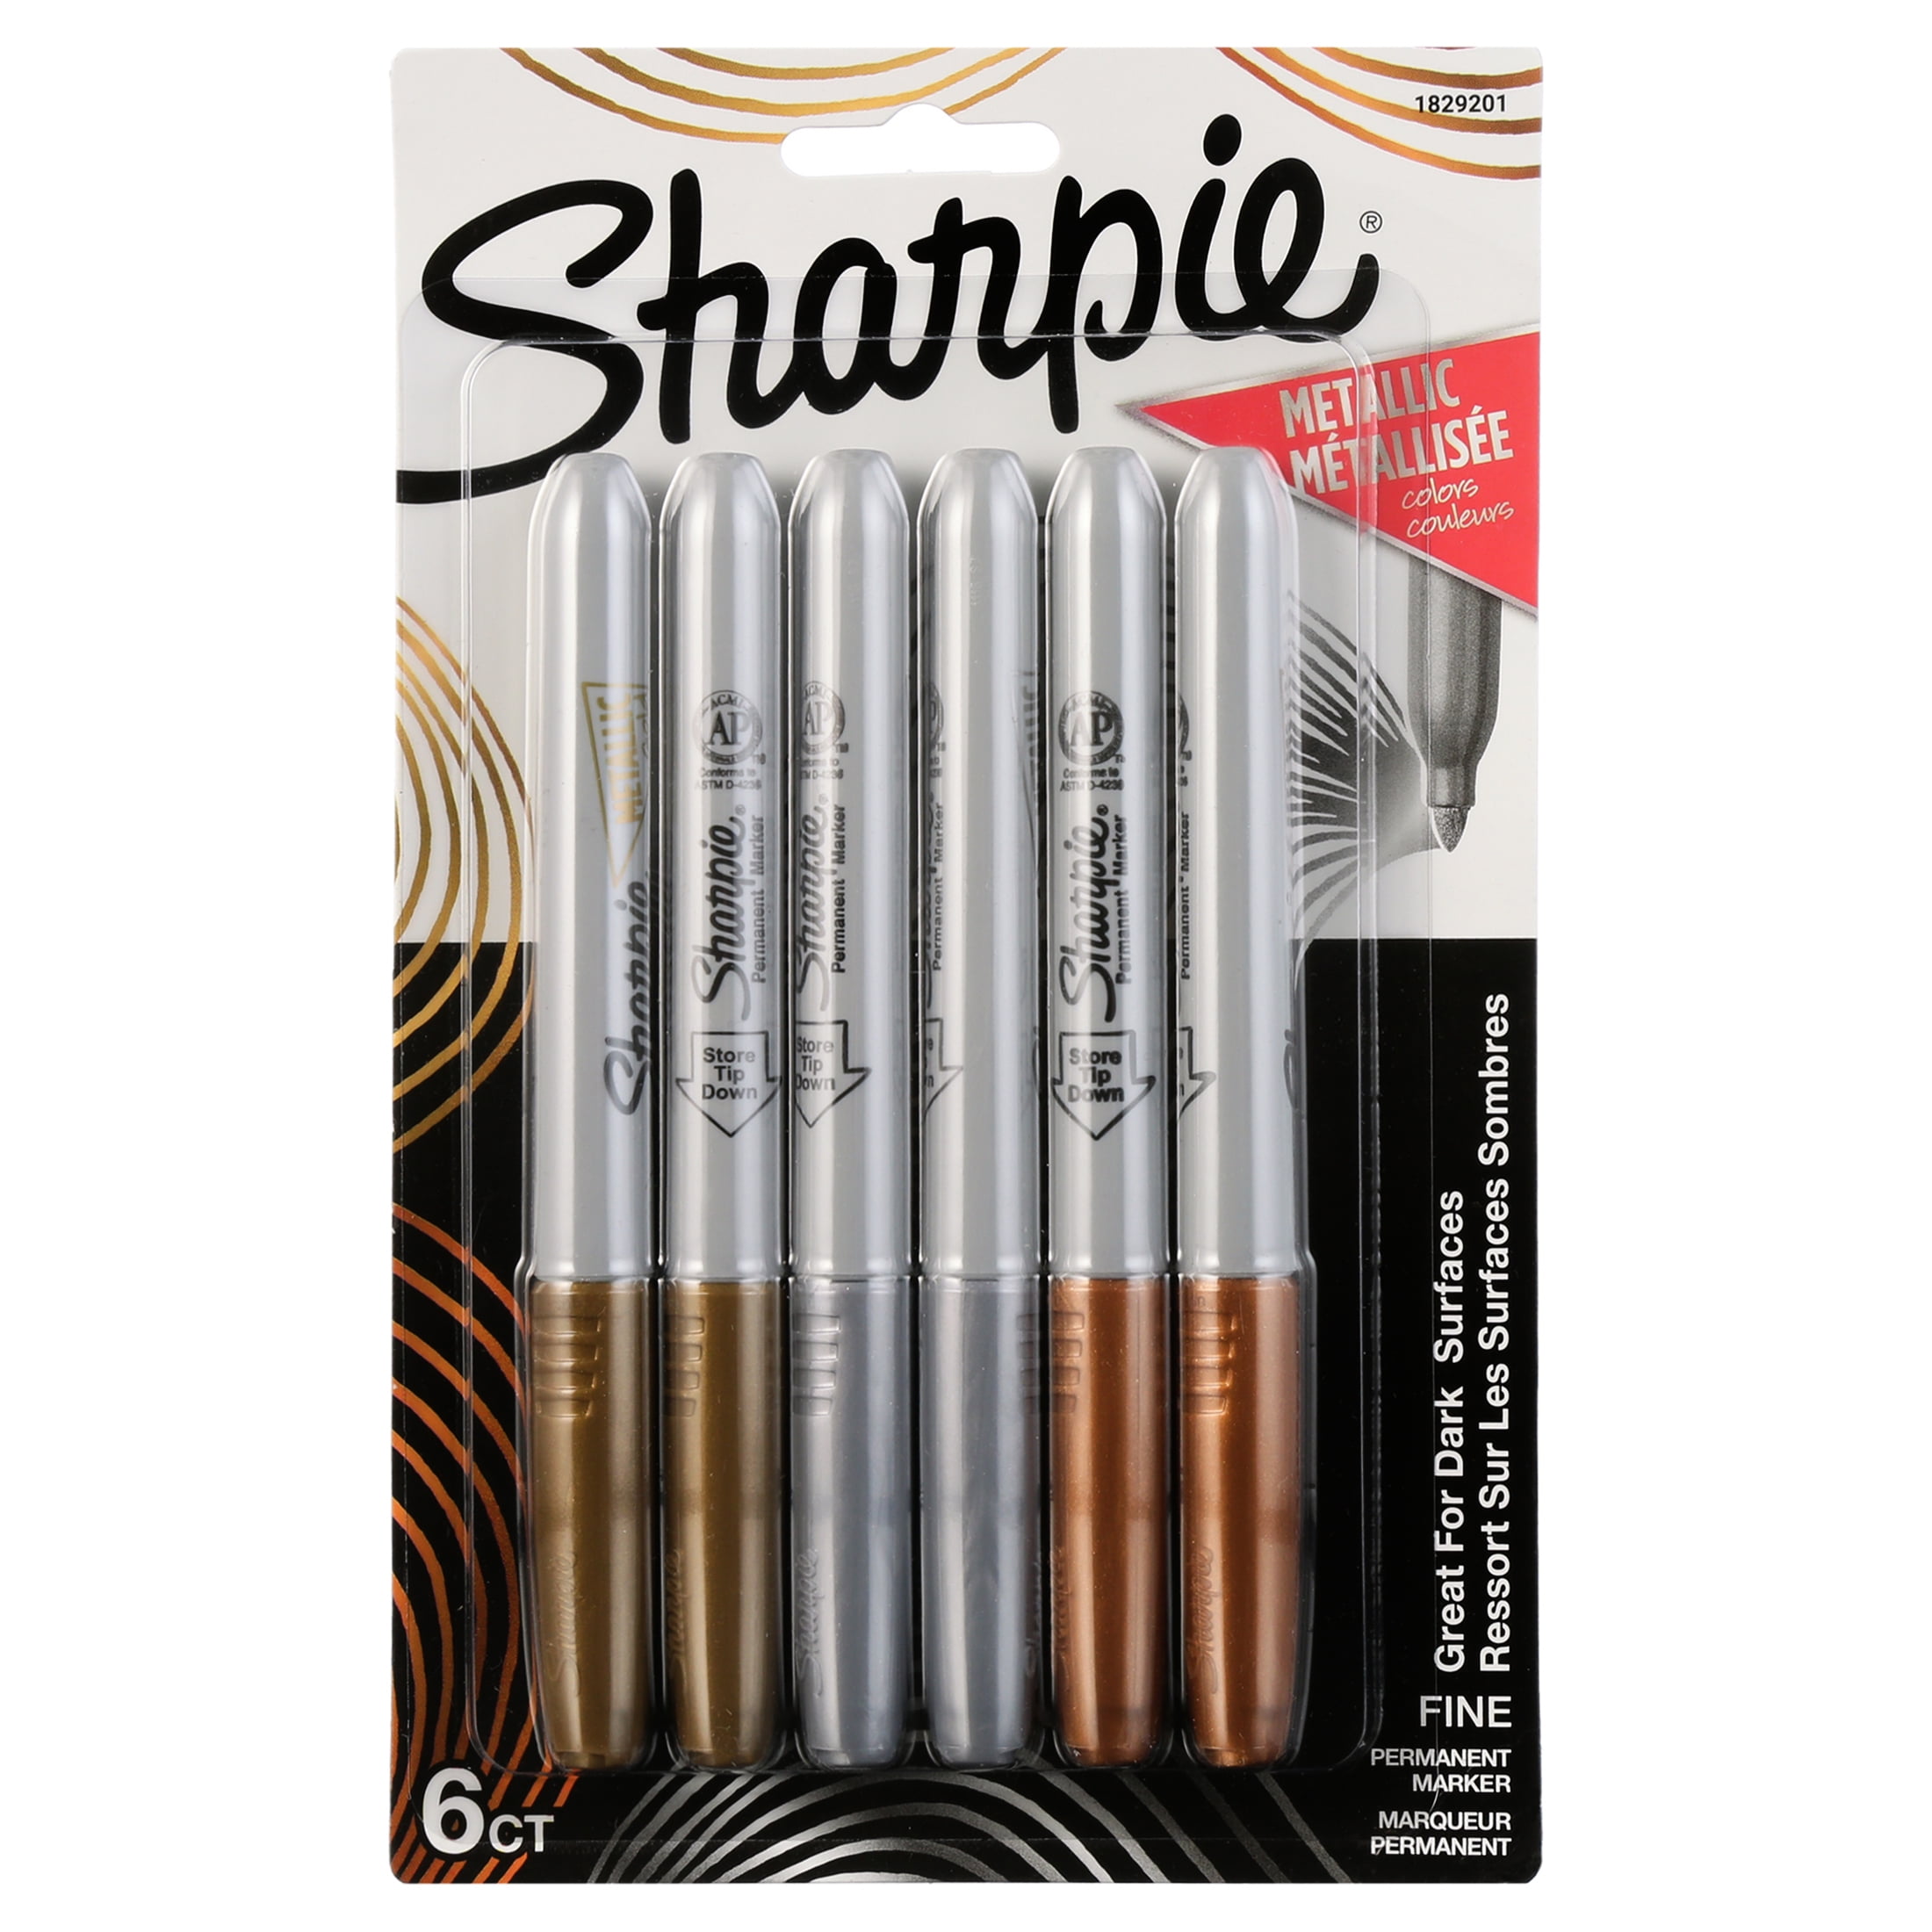 Sharpie Metallic Permanent Markers, Set of 6